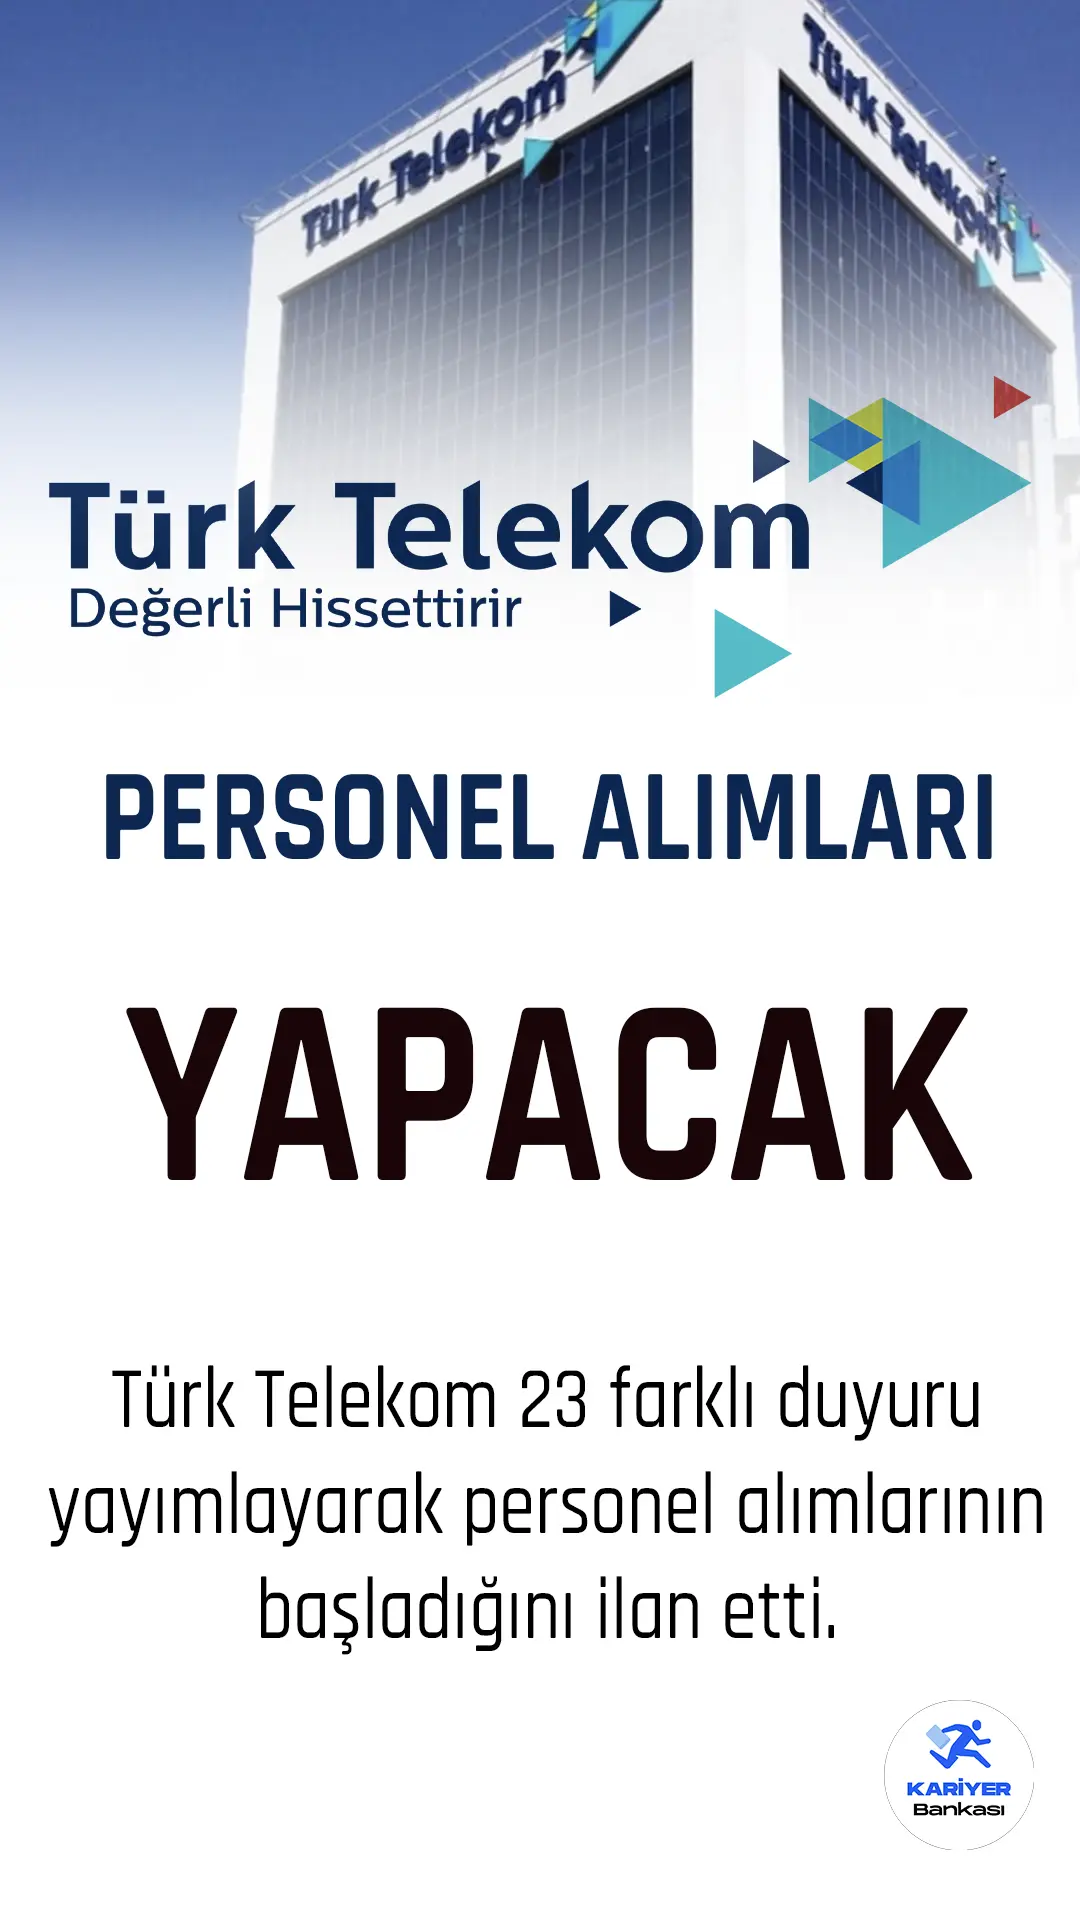 Türk Telekom yeni personel alımları yapacağını duyurdu.